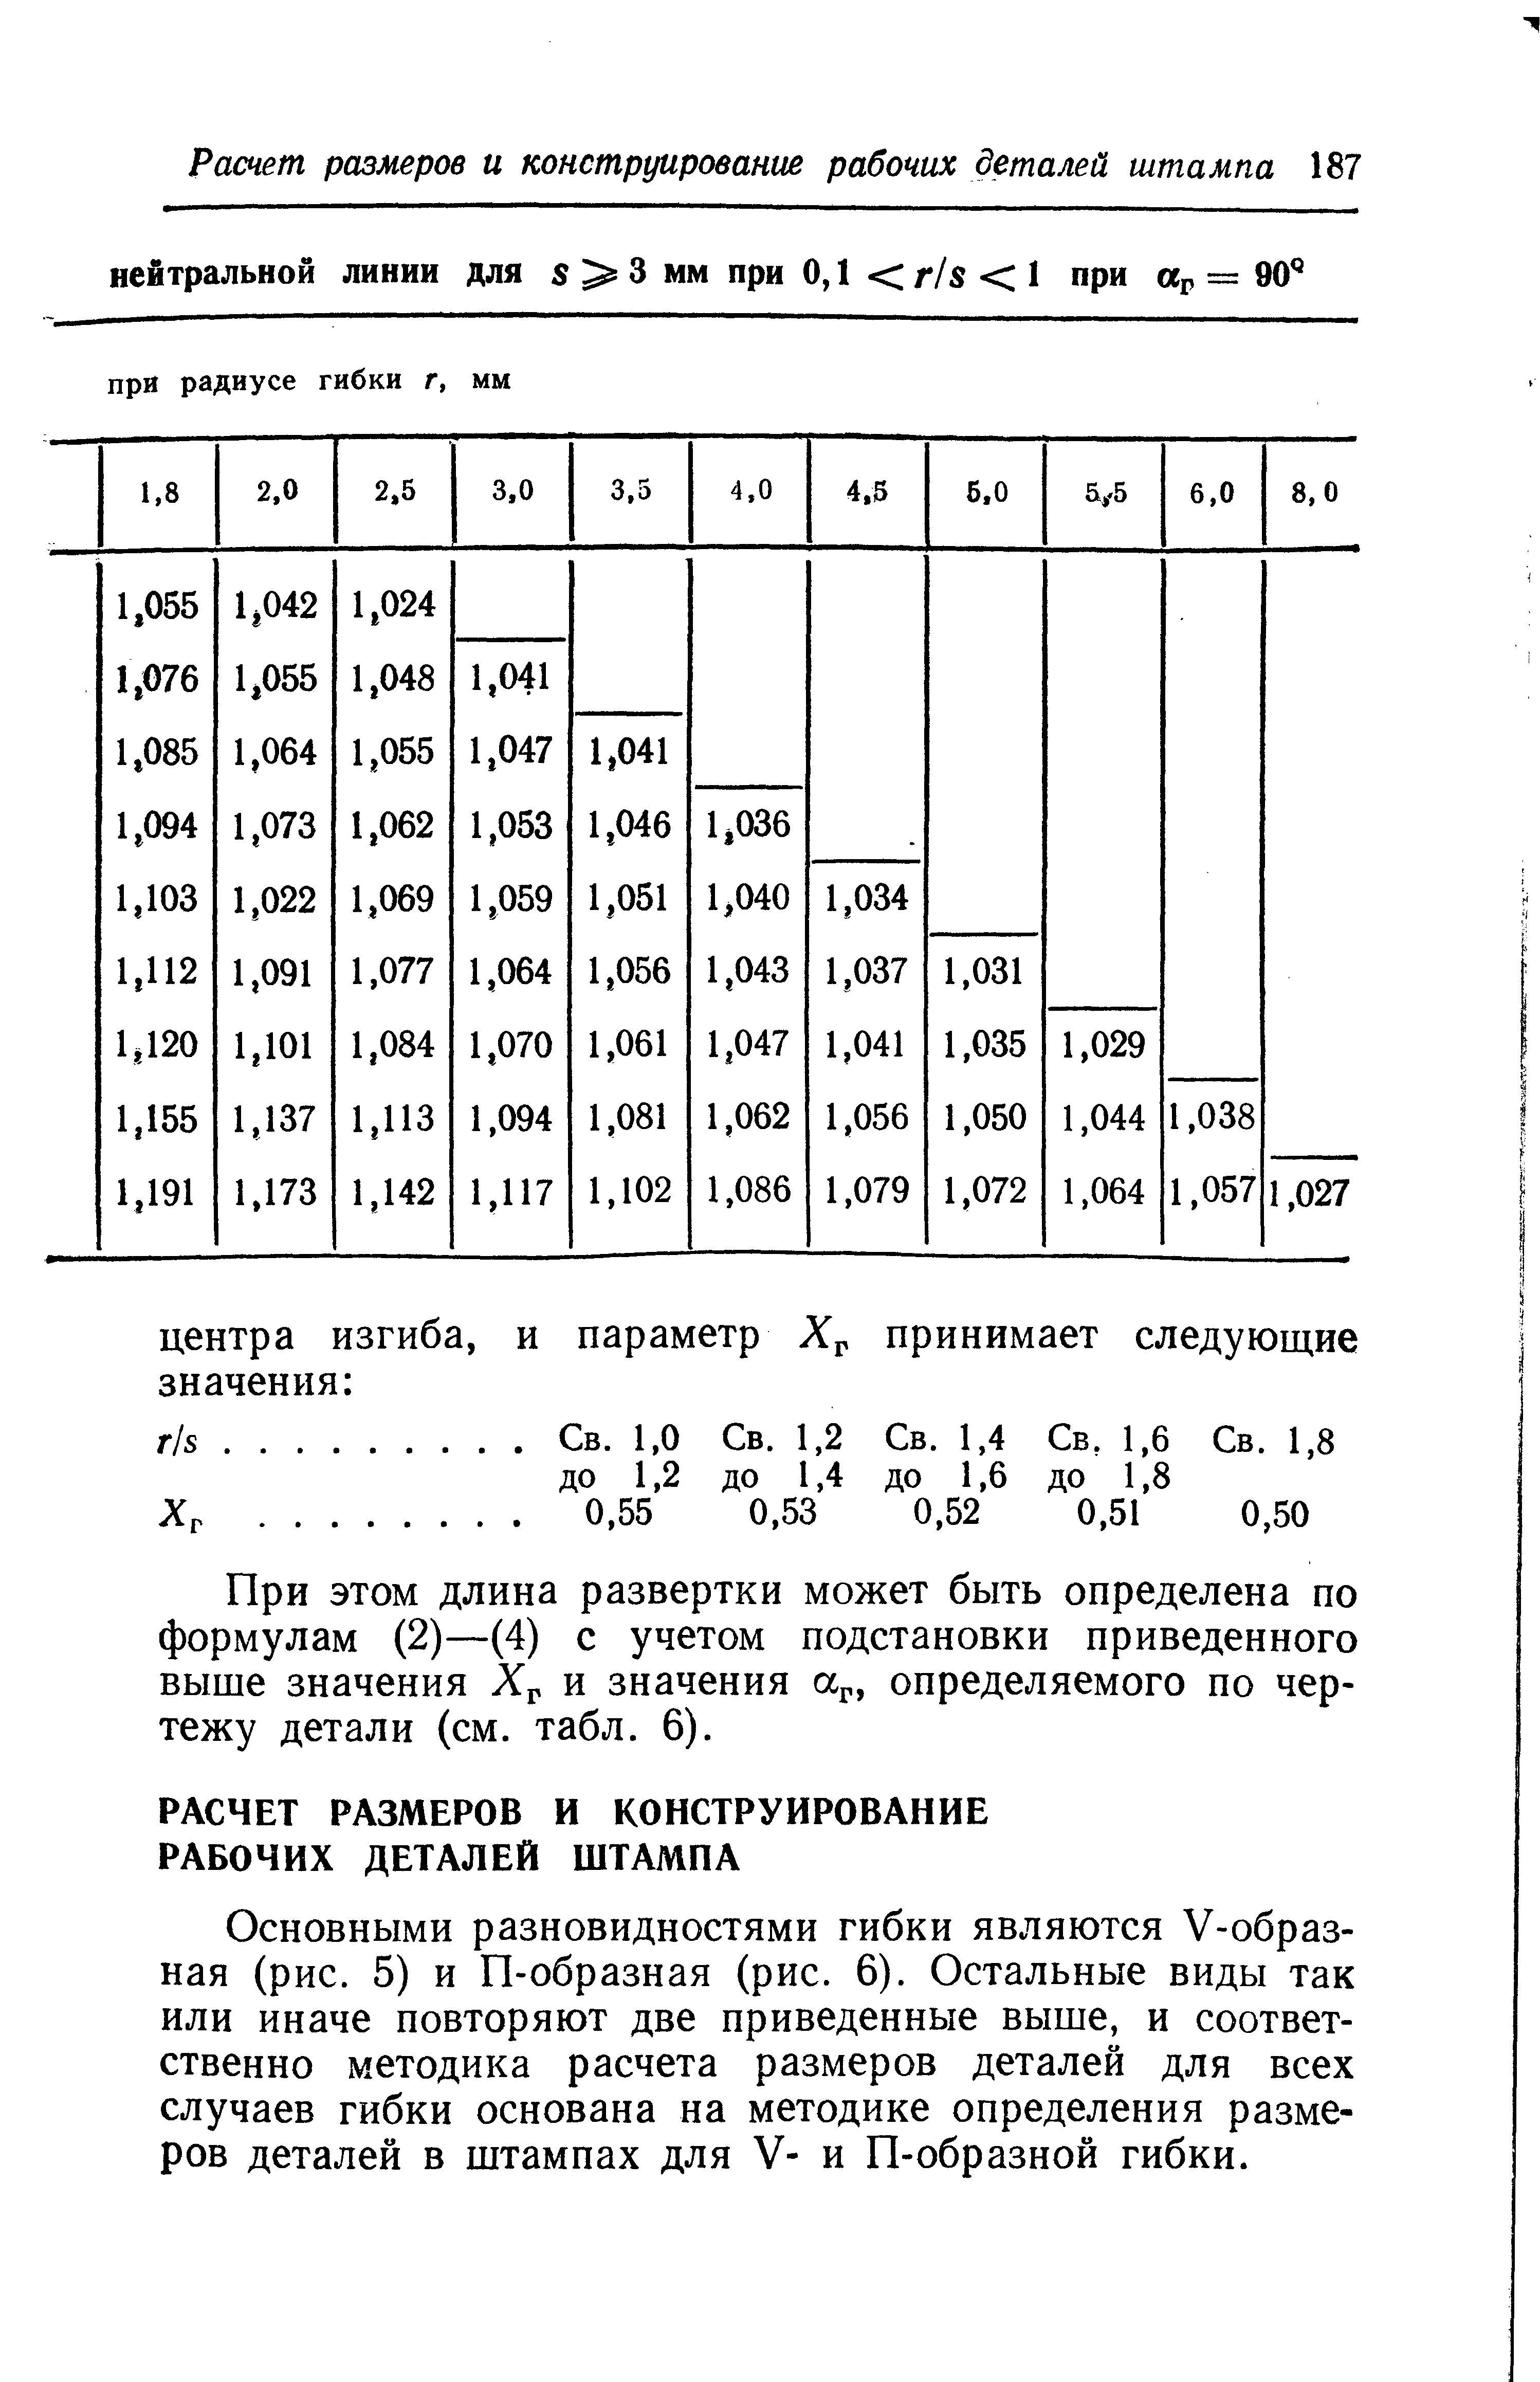 При этом длина развертки может быть определена по формулам (2)—(4) с учетом подстановки приведенного выше значения Хр и значения ар, определяемого по чертежу детали (см. табл. 6).
